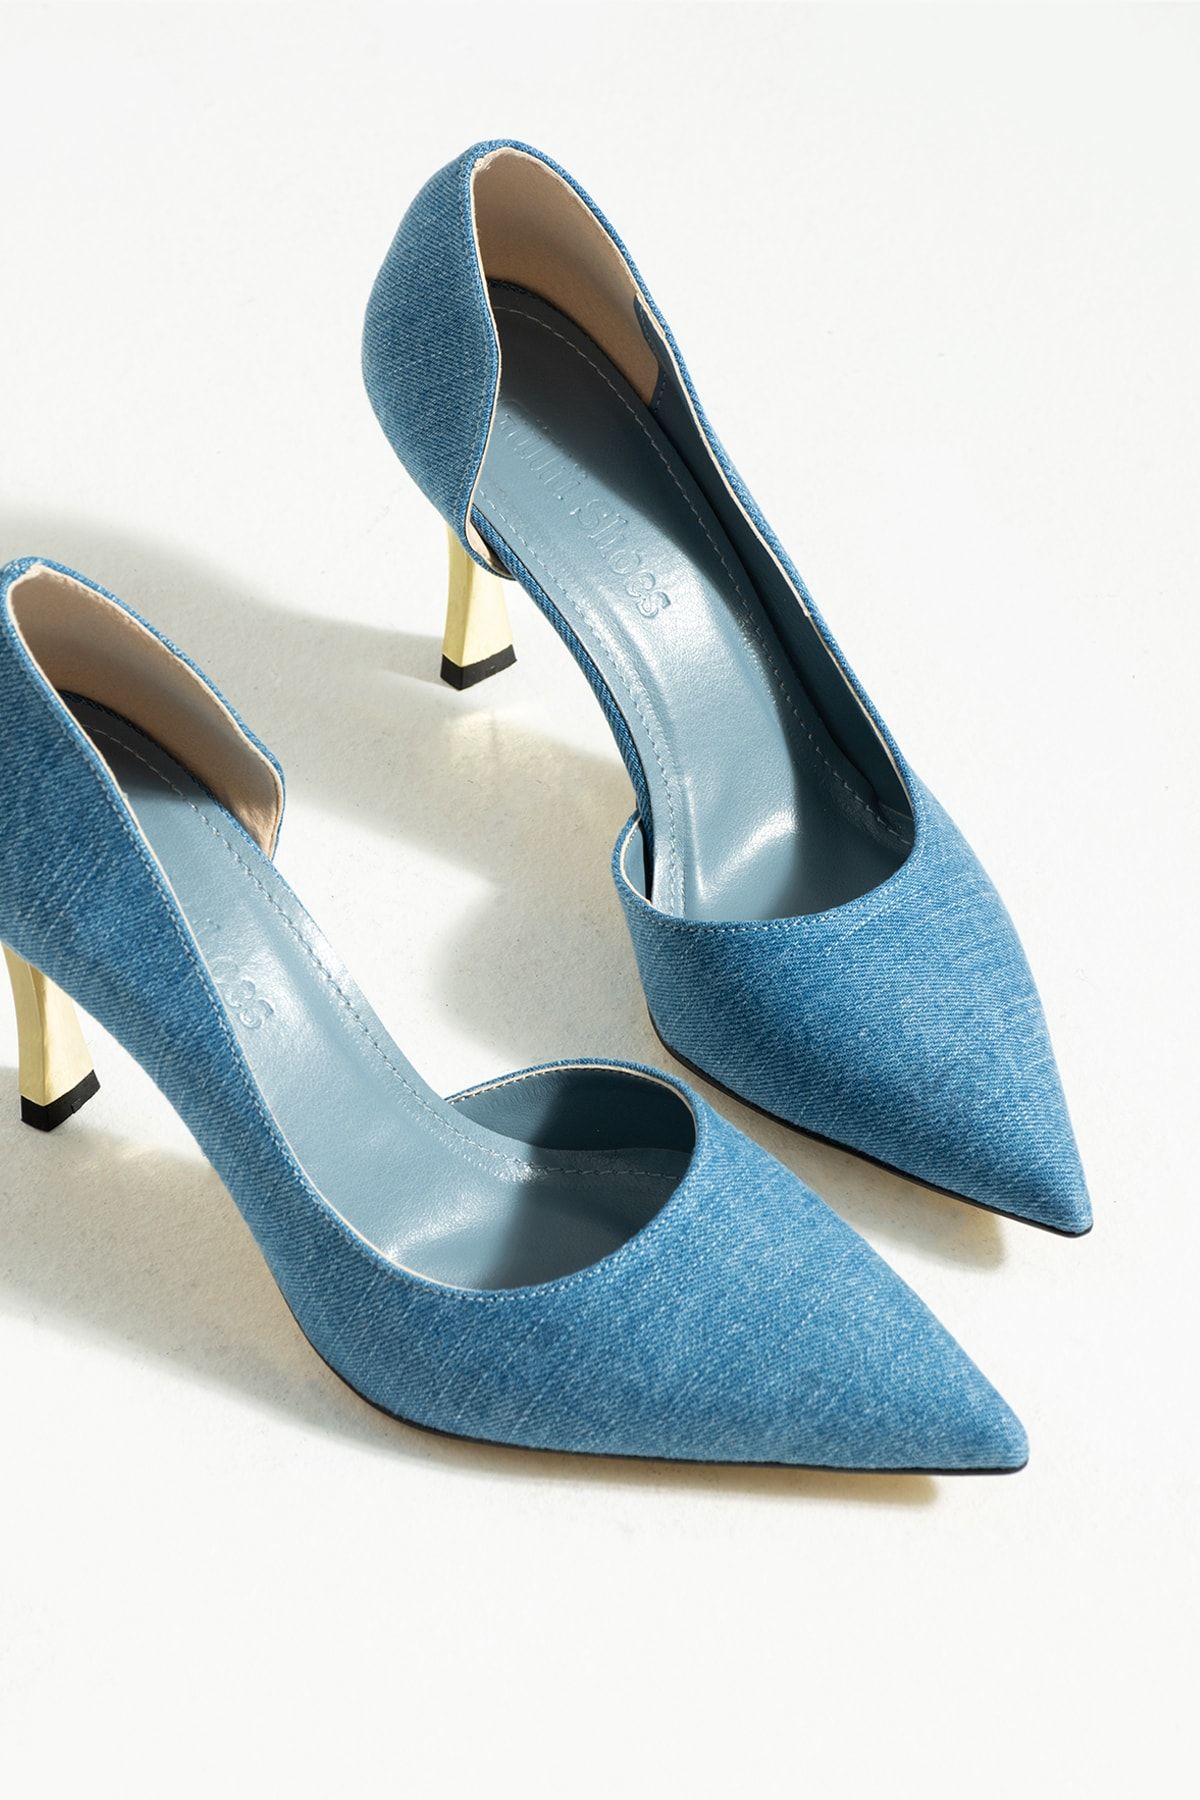 Güllü Shoes Kadın Topuklu Ayakkabı - Yüksek Topuklu Stiletto Rahat Şık ve İnce İş Ayakkabısı Mavi Kot 9 cm